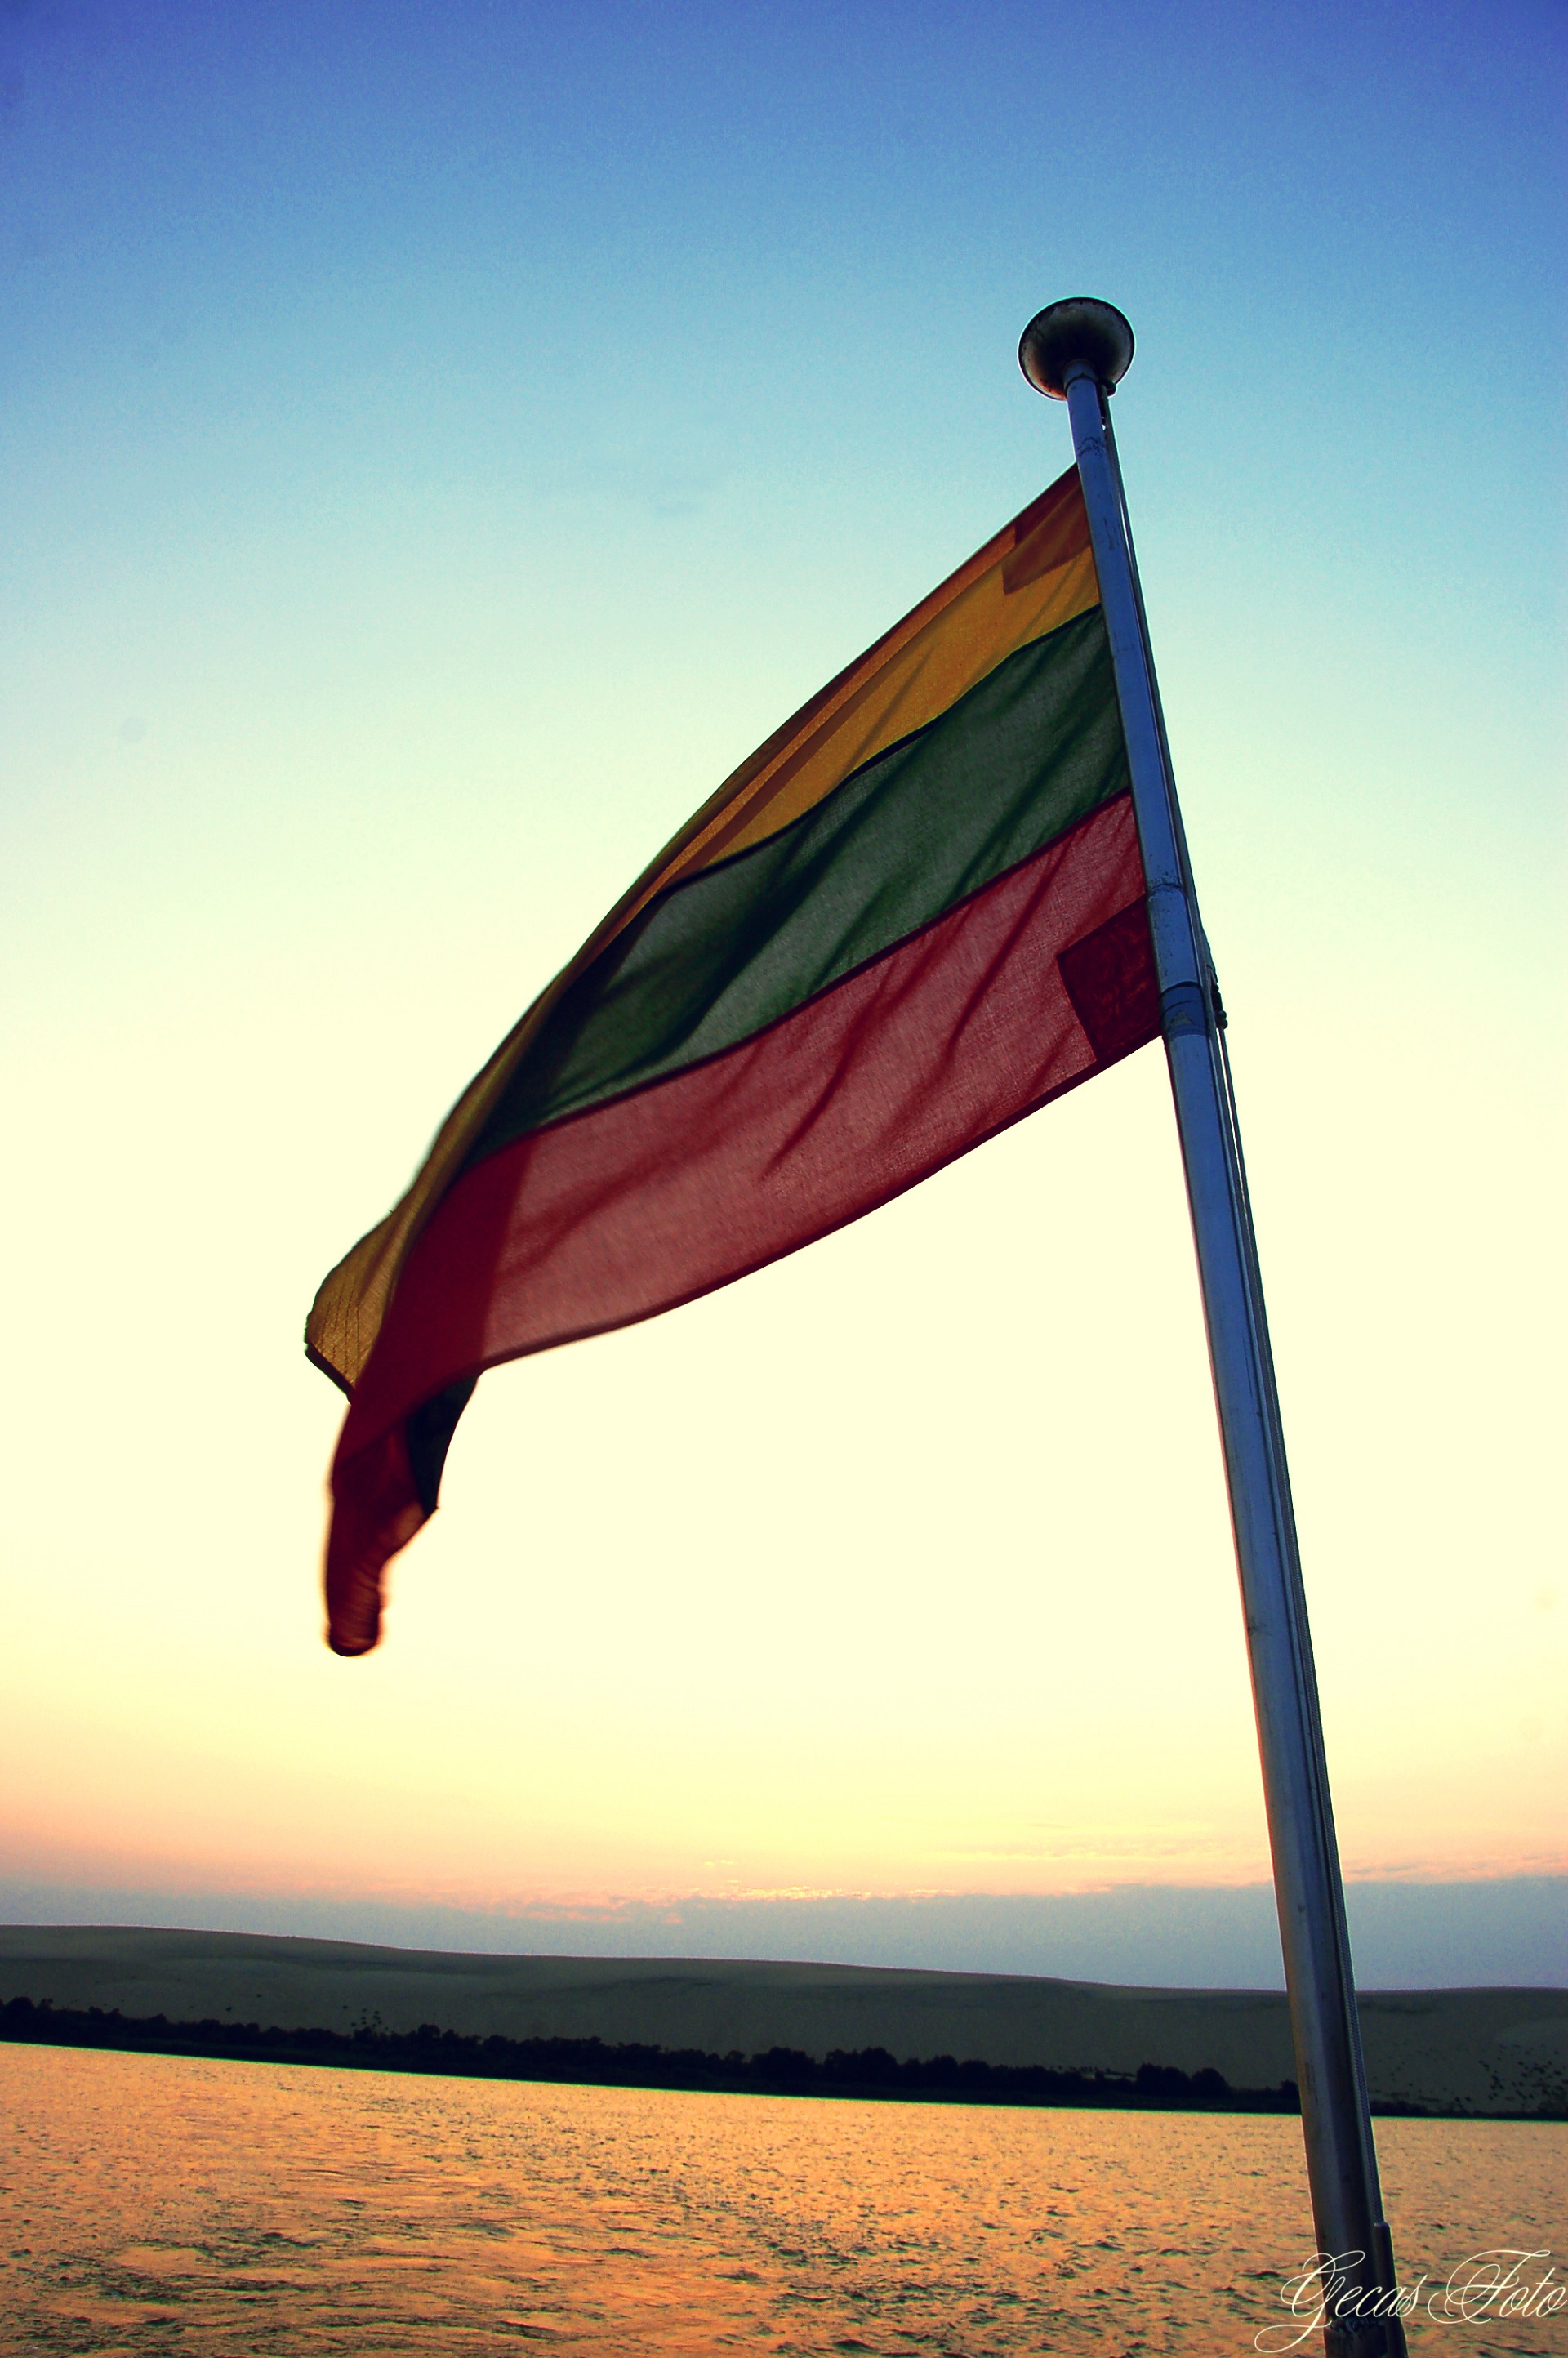 Erneuter Sieg bei Aufsatz-Wettbewerb in Litauen